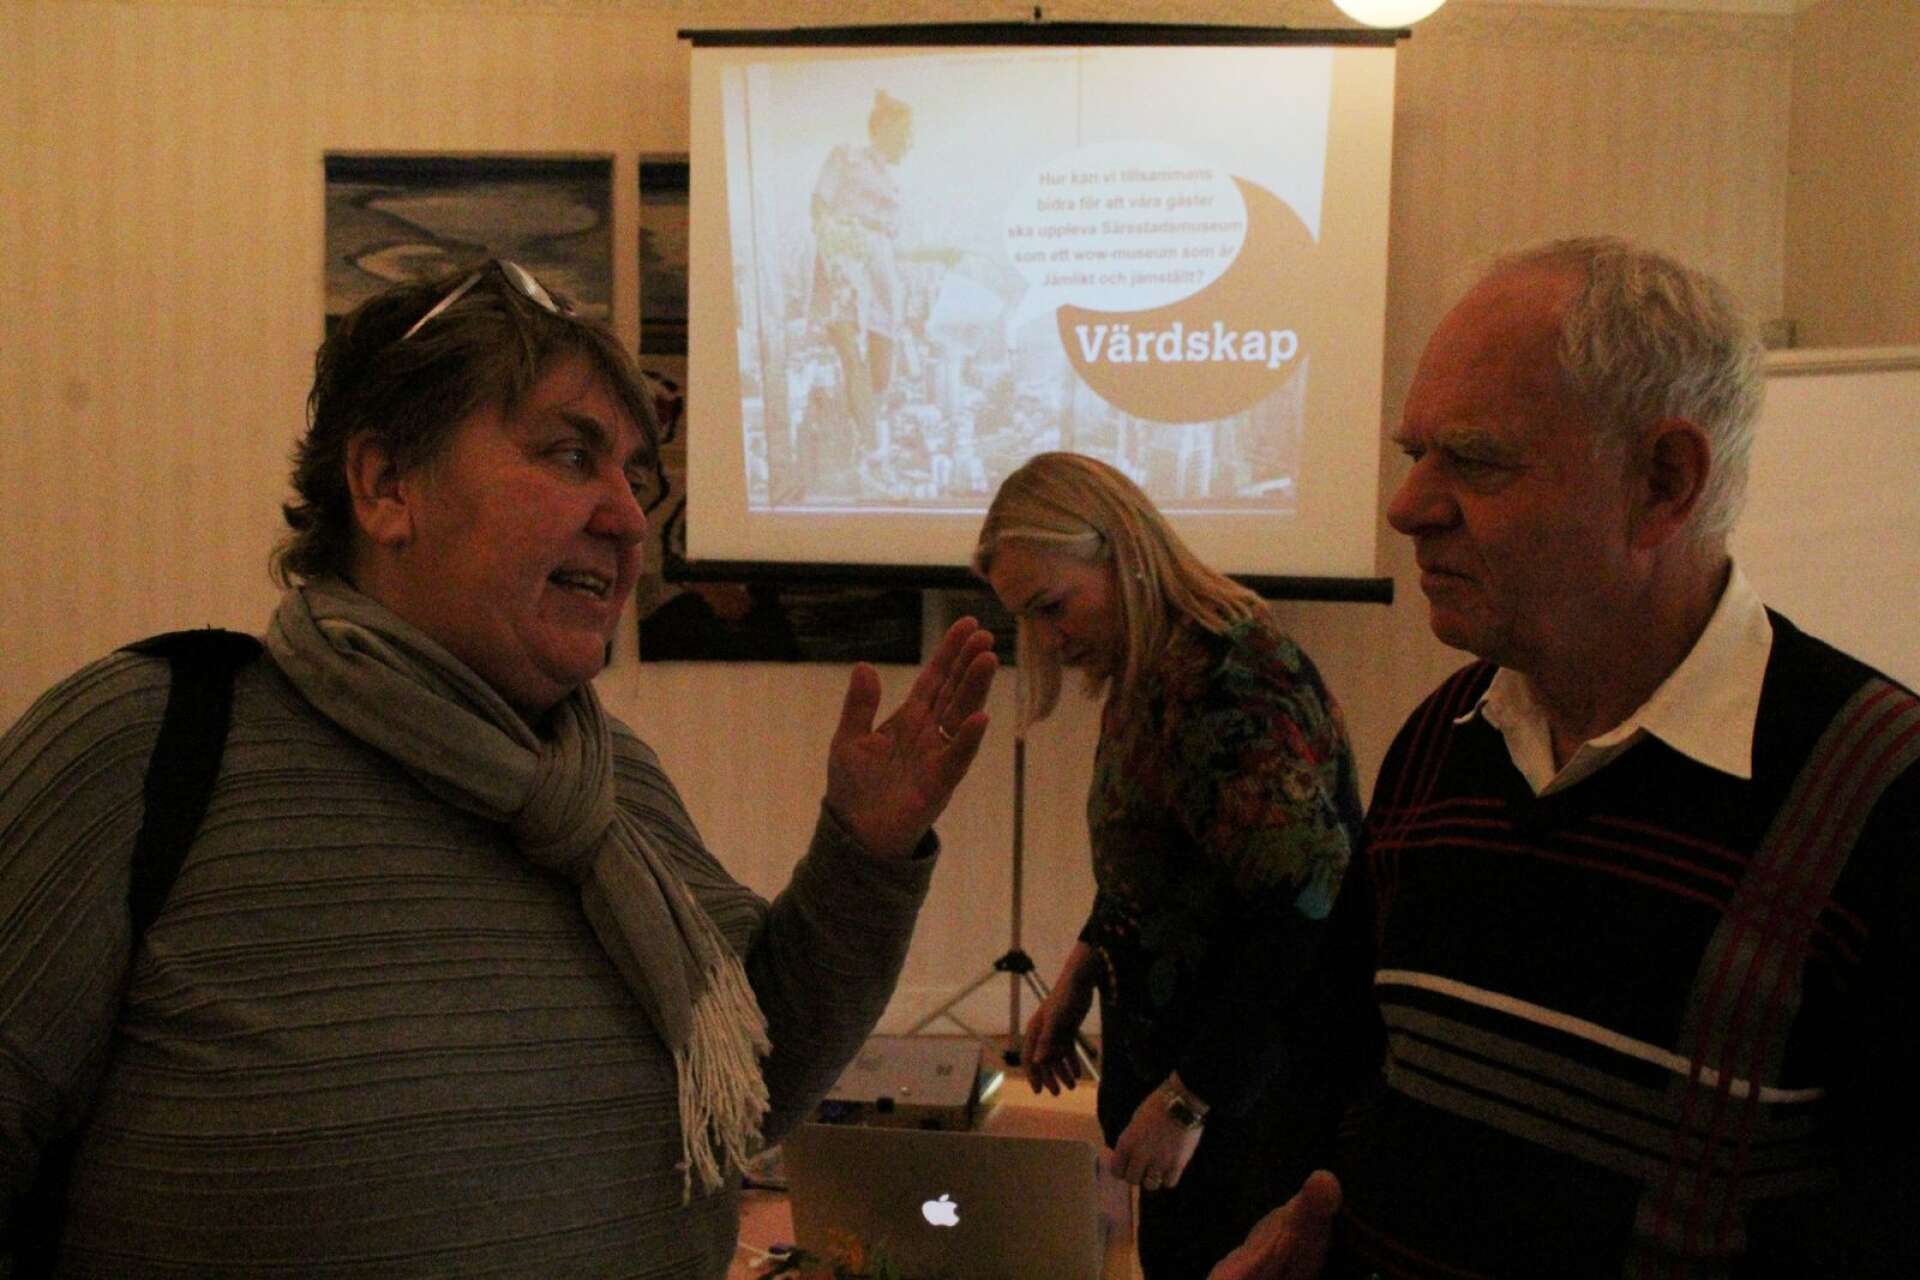 Ylva Nilson i diskussion med en av åhörarna. I bakgrunden syns föreläsare nummer två, Maria Comstedt.